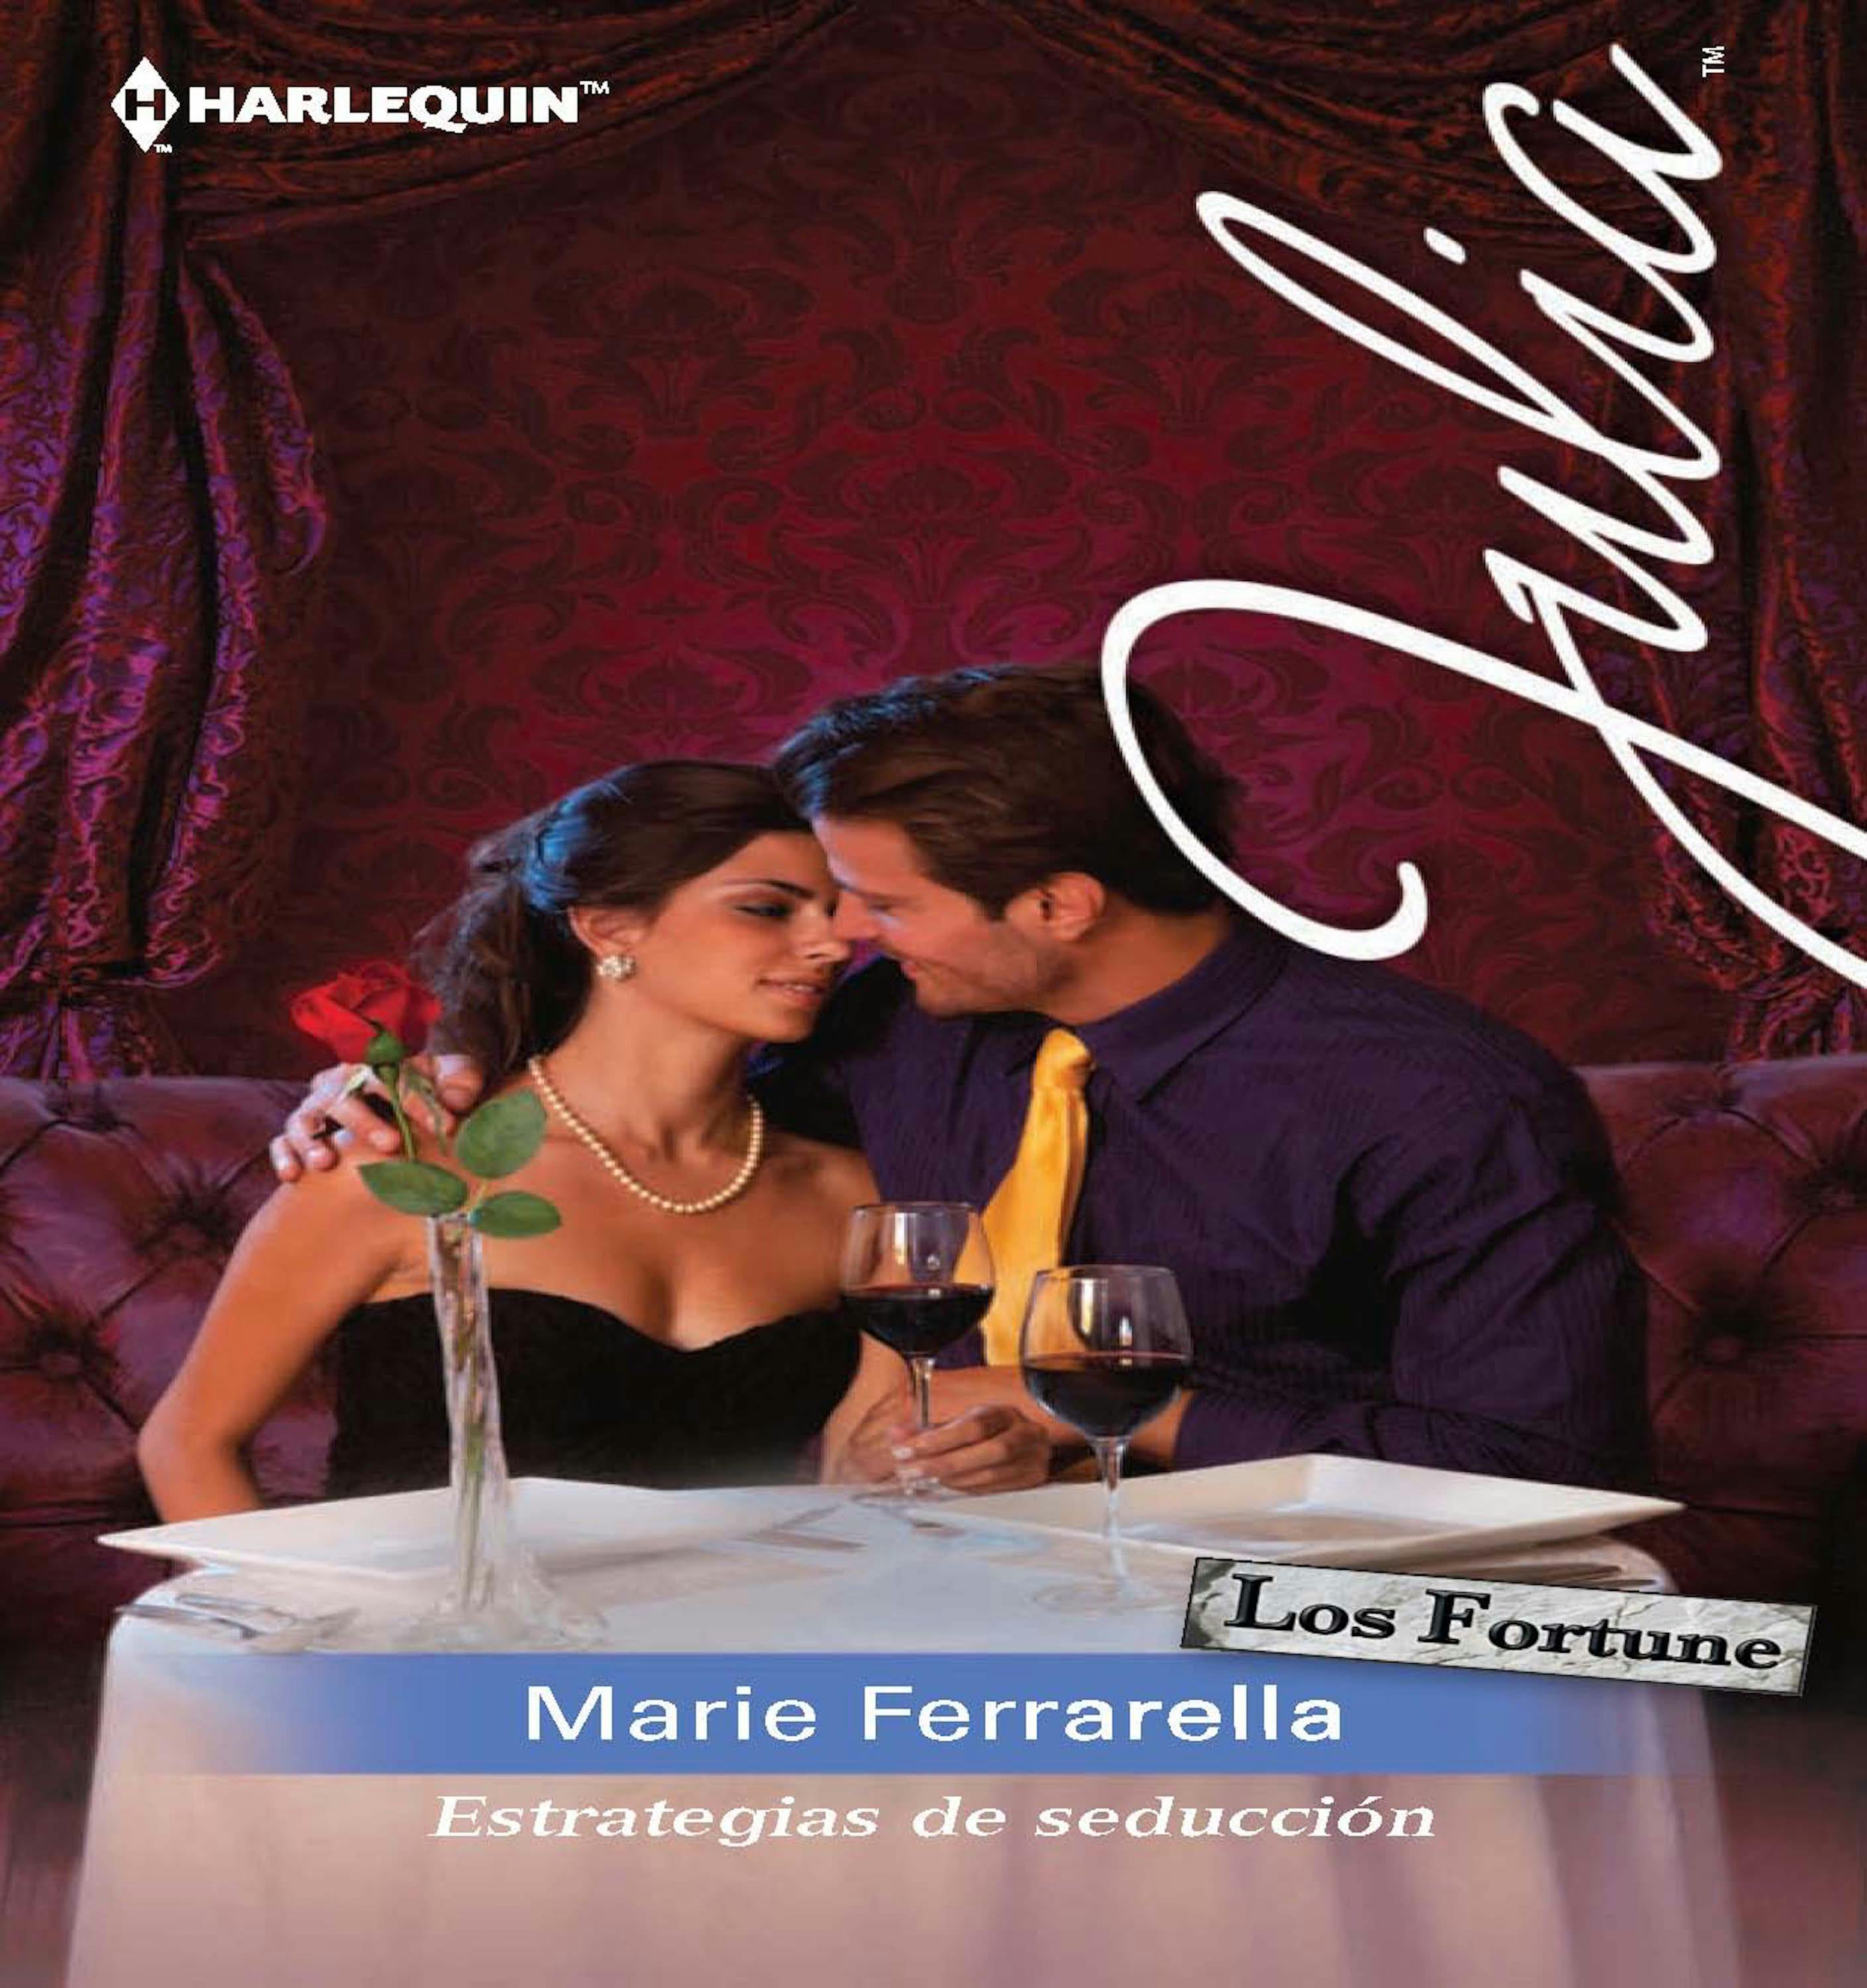 Estrategias de seducción: Los Fortune: Romance turbulento (2) - undefined